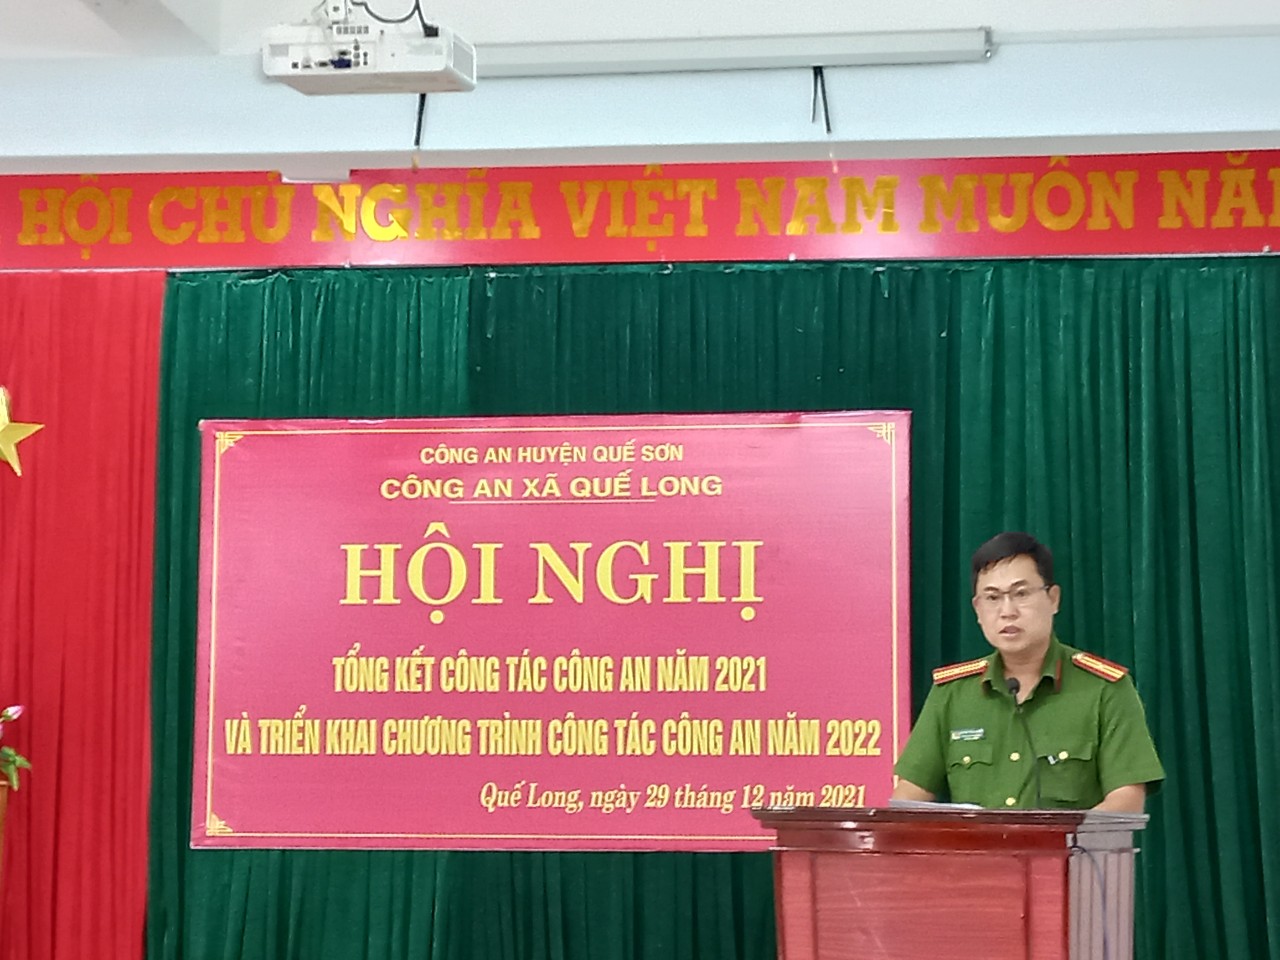 Ảnh: Đồng chí Nguyễn Tiến Phương - Đảng ủy viên - Trưởng Công an xã phát biểu khai mạc Hội nghị